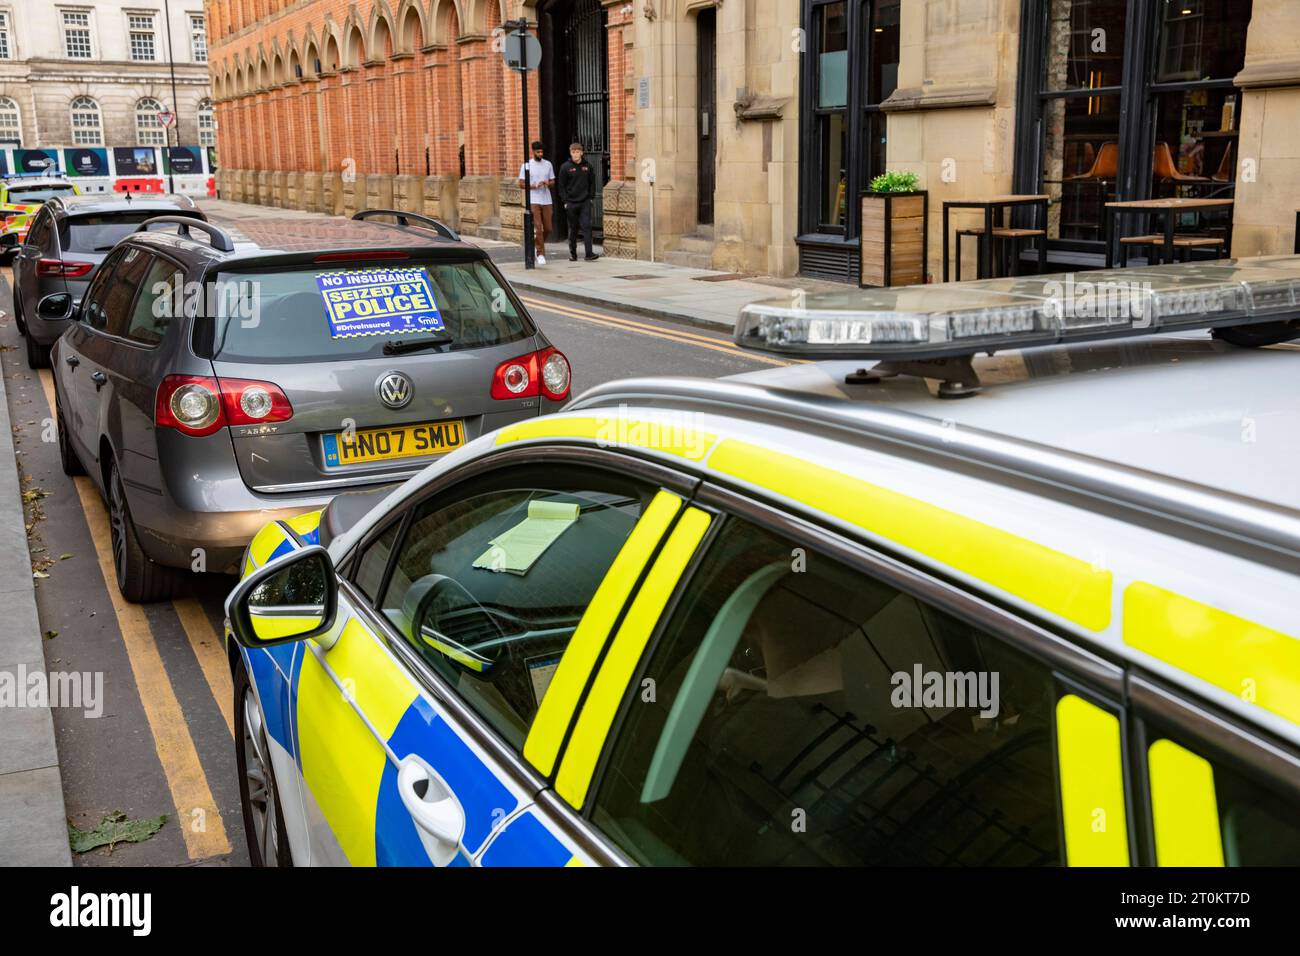 Police de Manchester, la police a saisi une voiture VW Passat pour ne pas avoir d'assurance, saisi pour aucun autocollant d'assurance placé sur la voiture, Manchester, Angleterre Banque D'Images